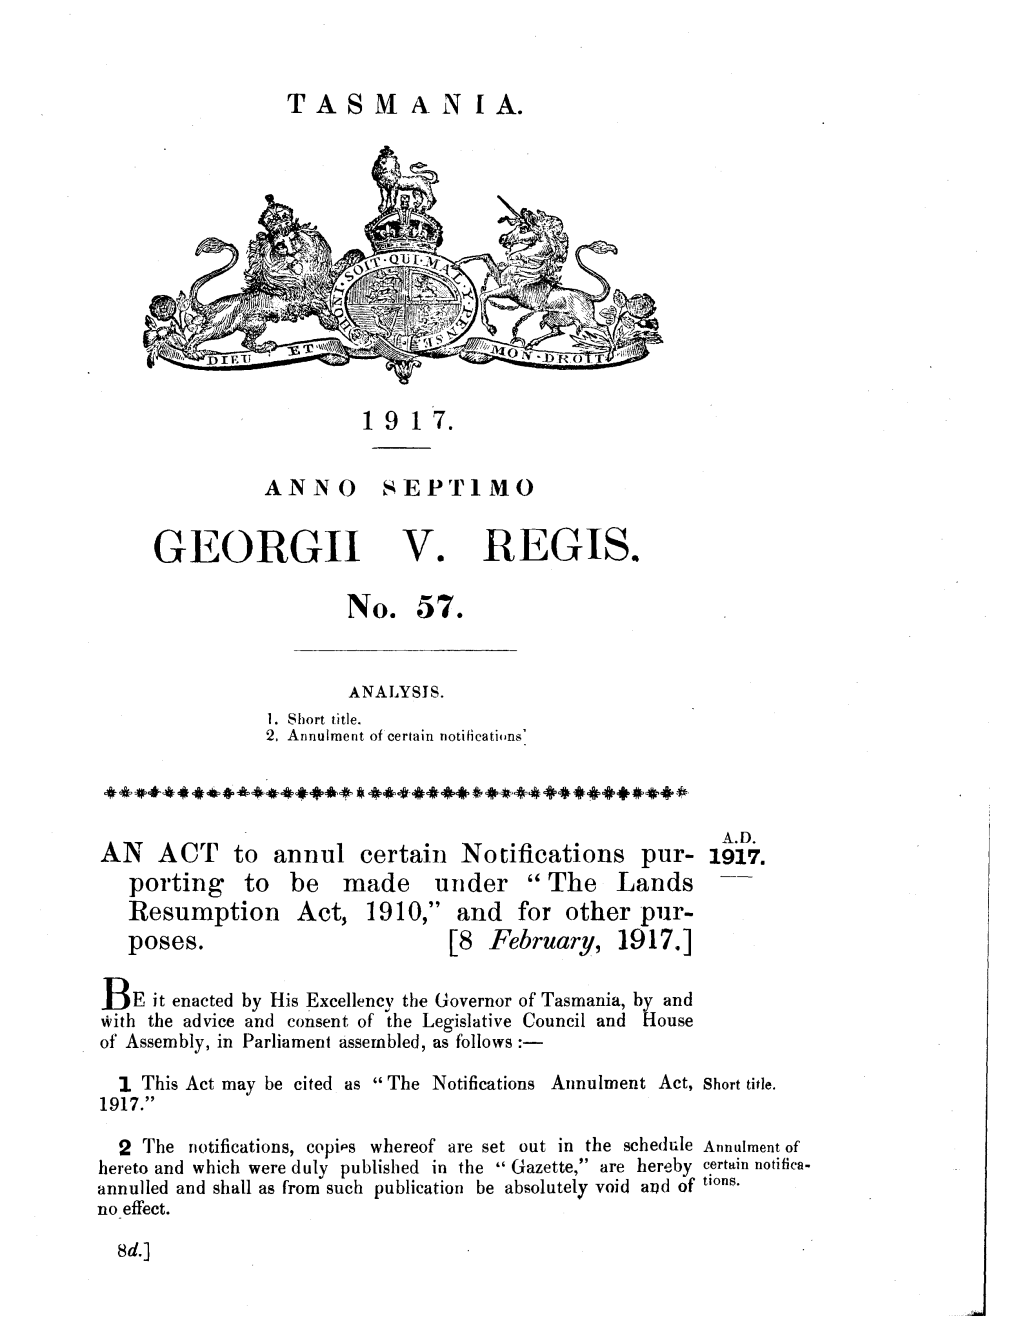 GEORGII V. REGIS. No